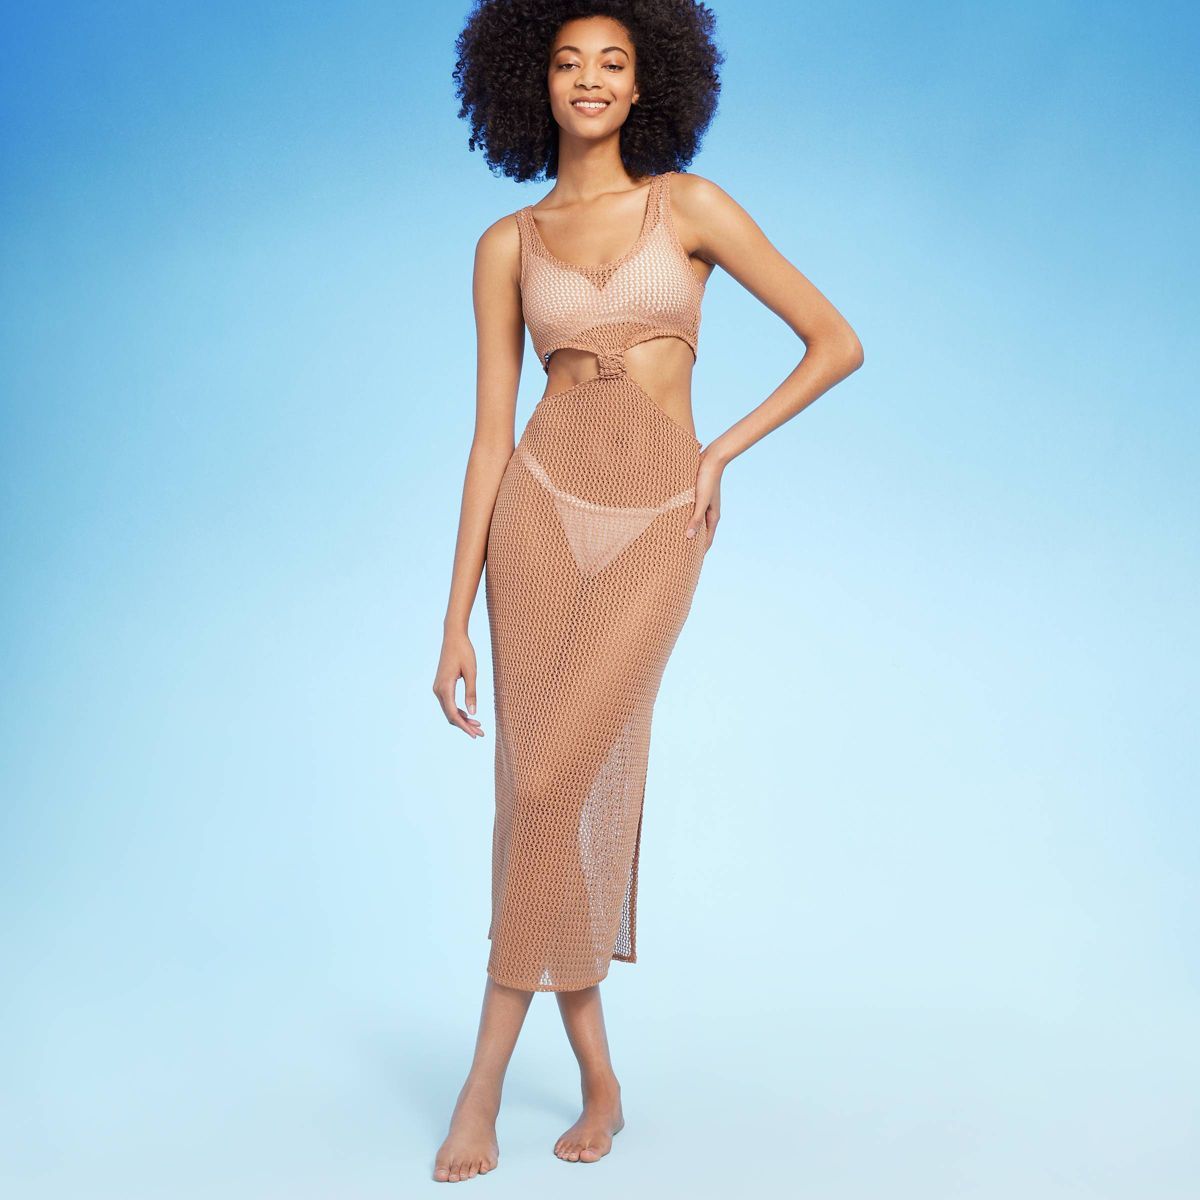 Women's Cut Out Crochet Cover Up Dress - Shade & Shore™ Light Brown | Target